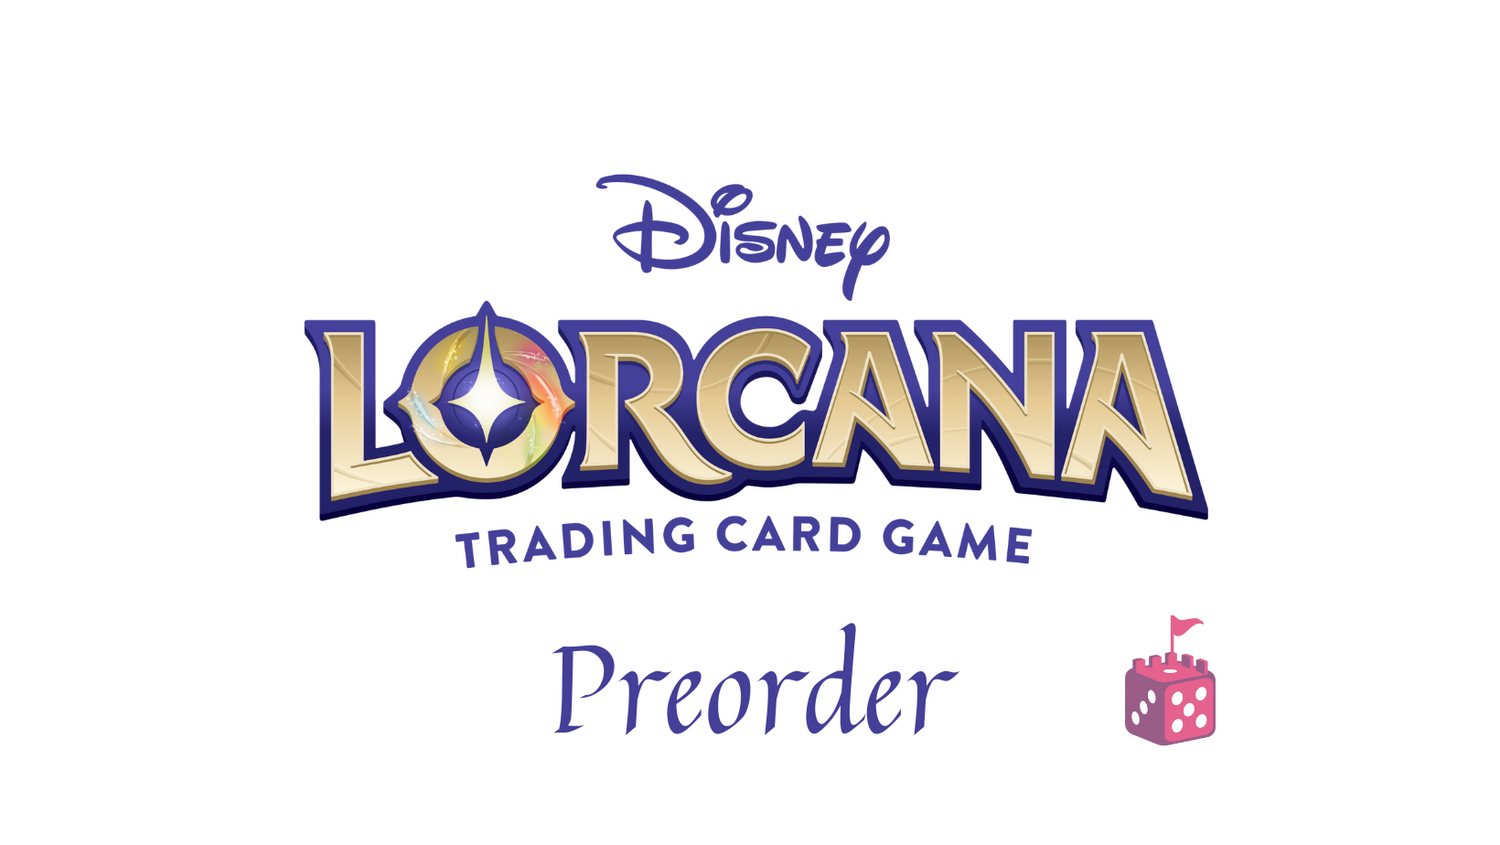 Disney: Lorcana Preorder